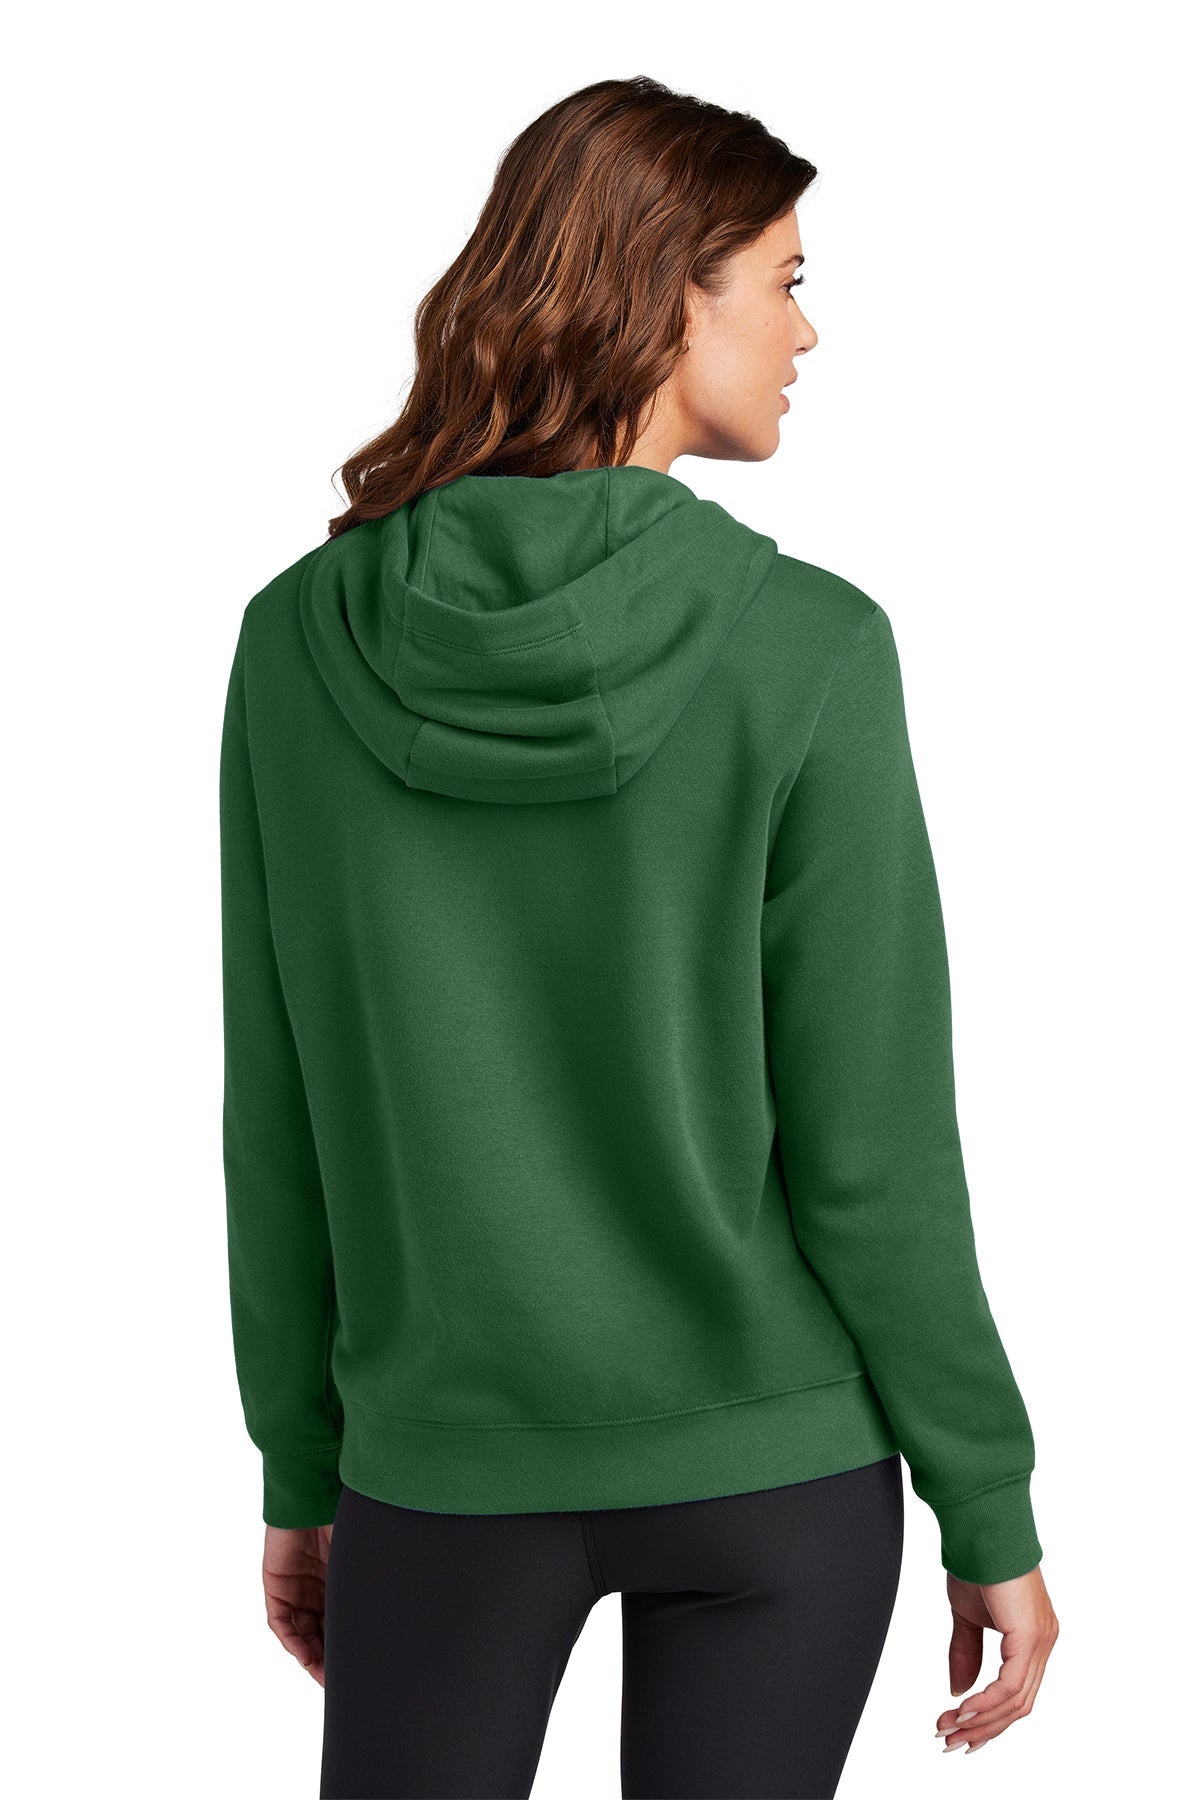 Nike Ladies Club Fleece Pullover Custom Hoodies, Gorge Green